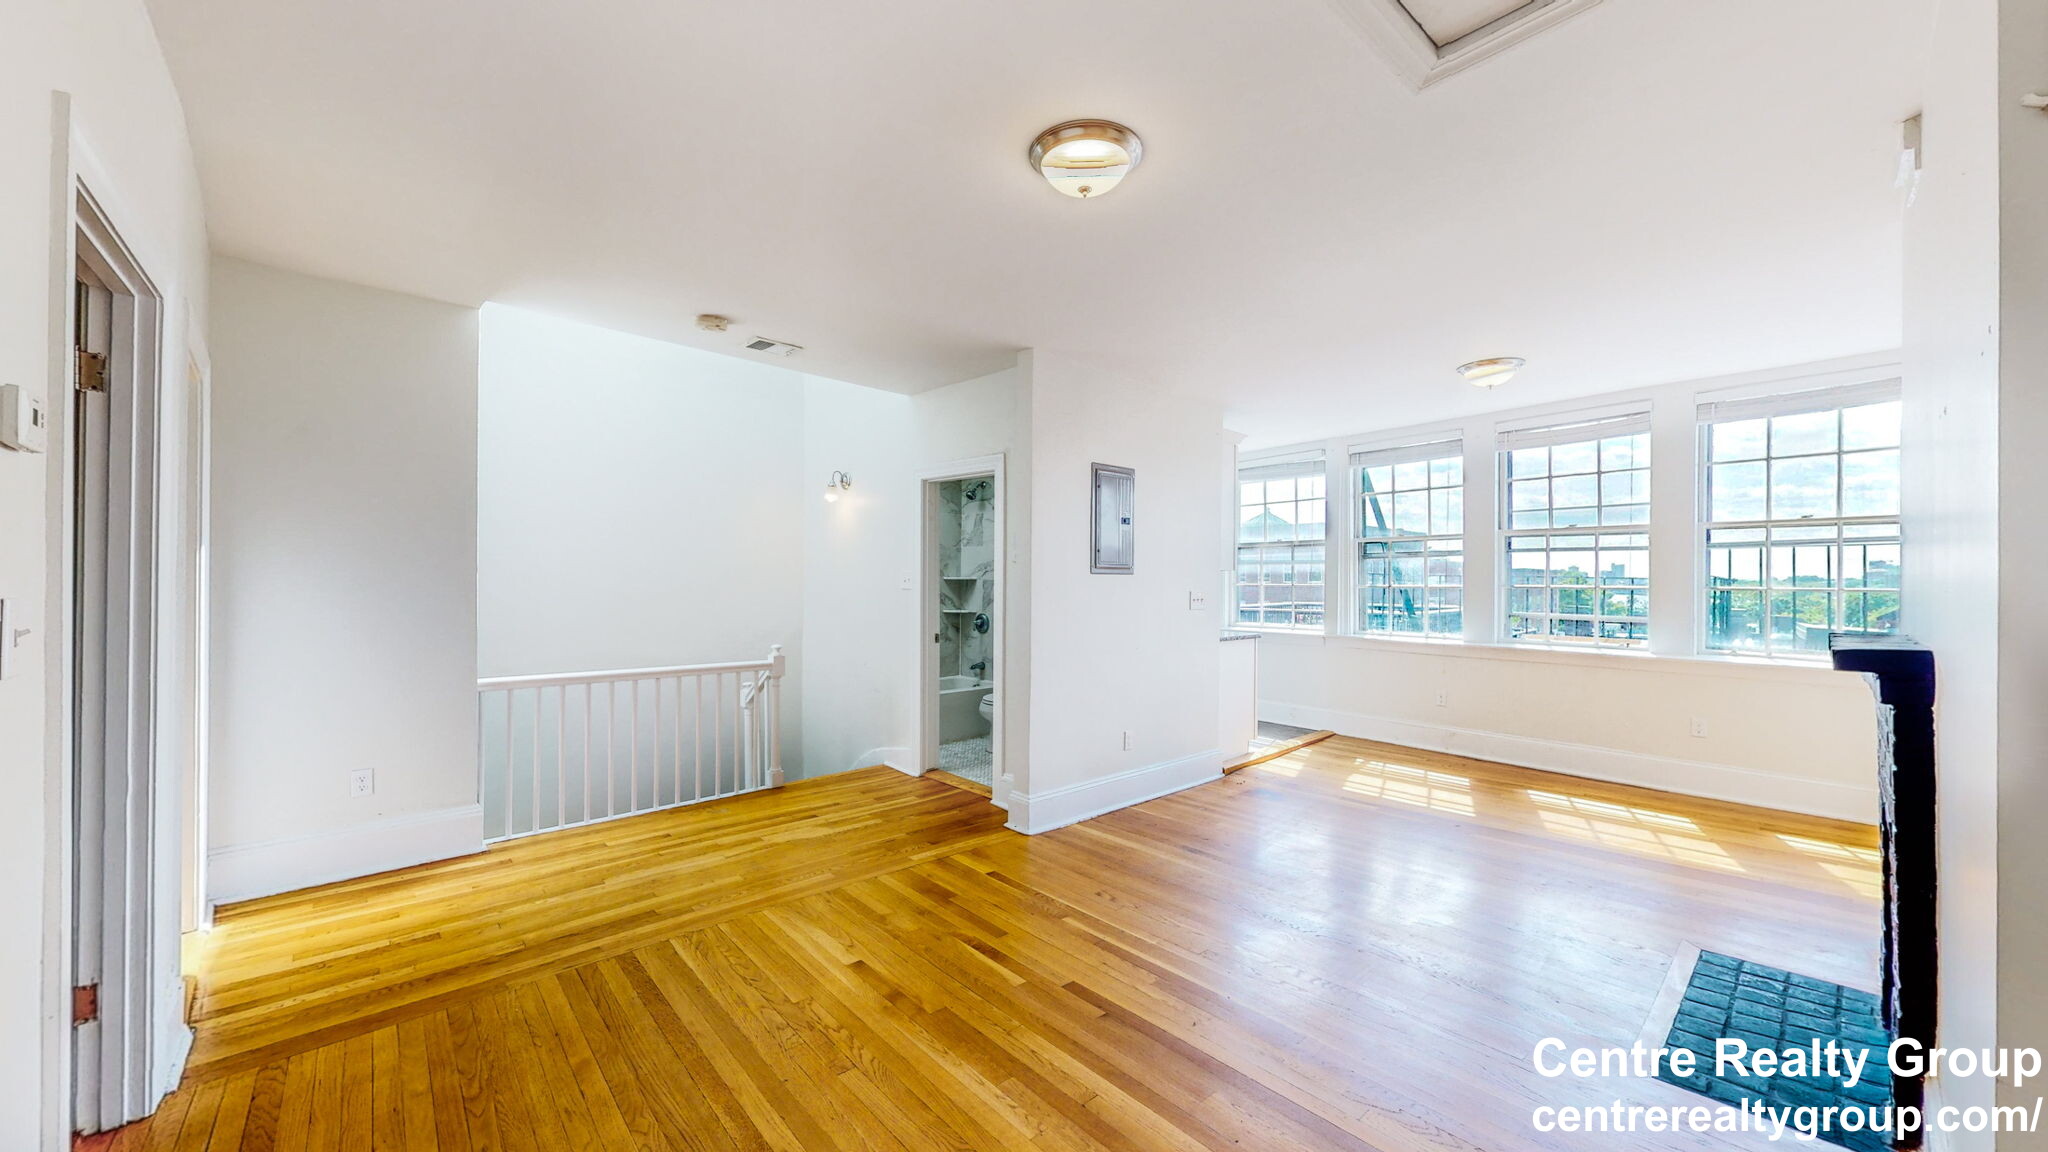 Photos of apartment on West Cedar St.,Boston MA 02114